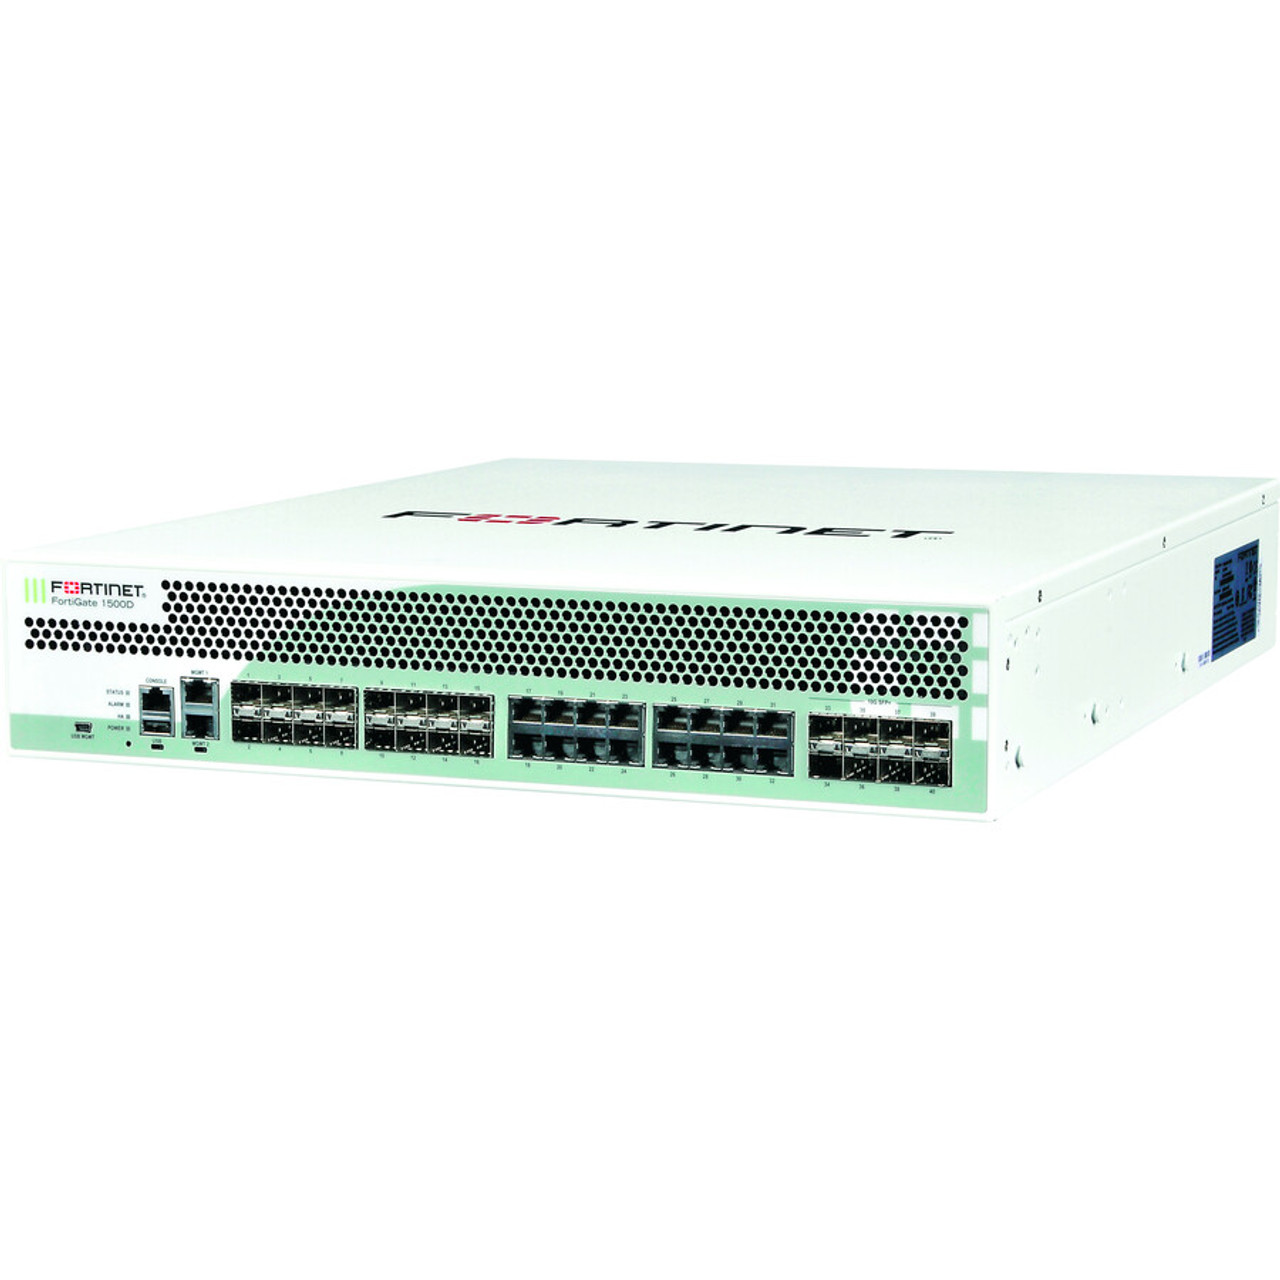 Fortinet FortiGate 1500D-DC Network Security/Firewall Appliance - 16 Port - 1000Base-T, 1000Base-X - 10 Gigabit Ethernet - 16 x RJ-45 - 24 Total Expansion Slots - 2U - Rack-mountable